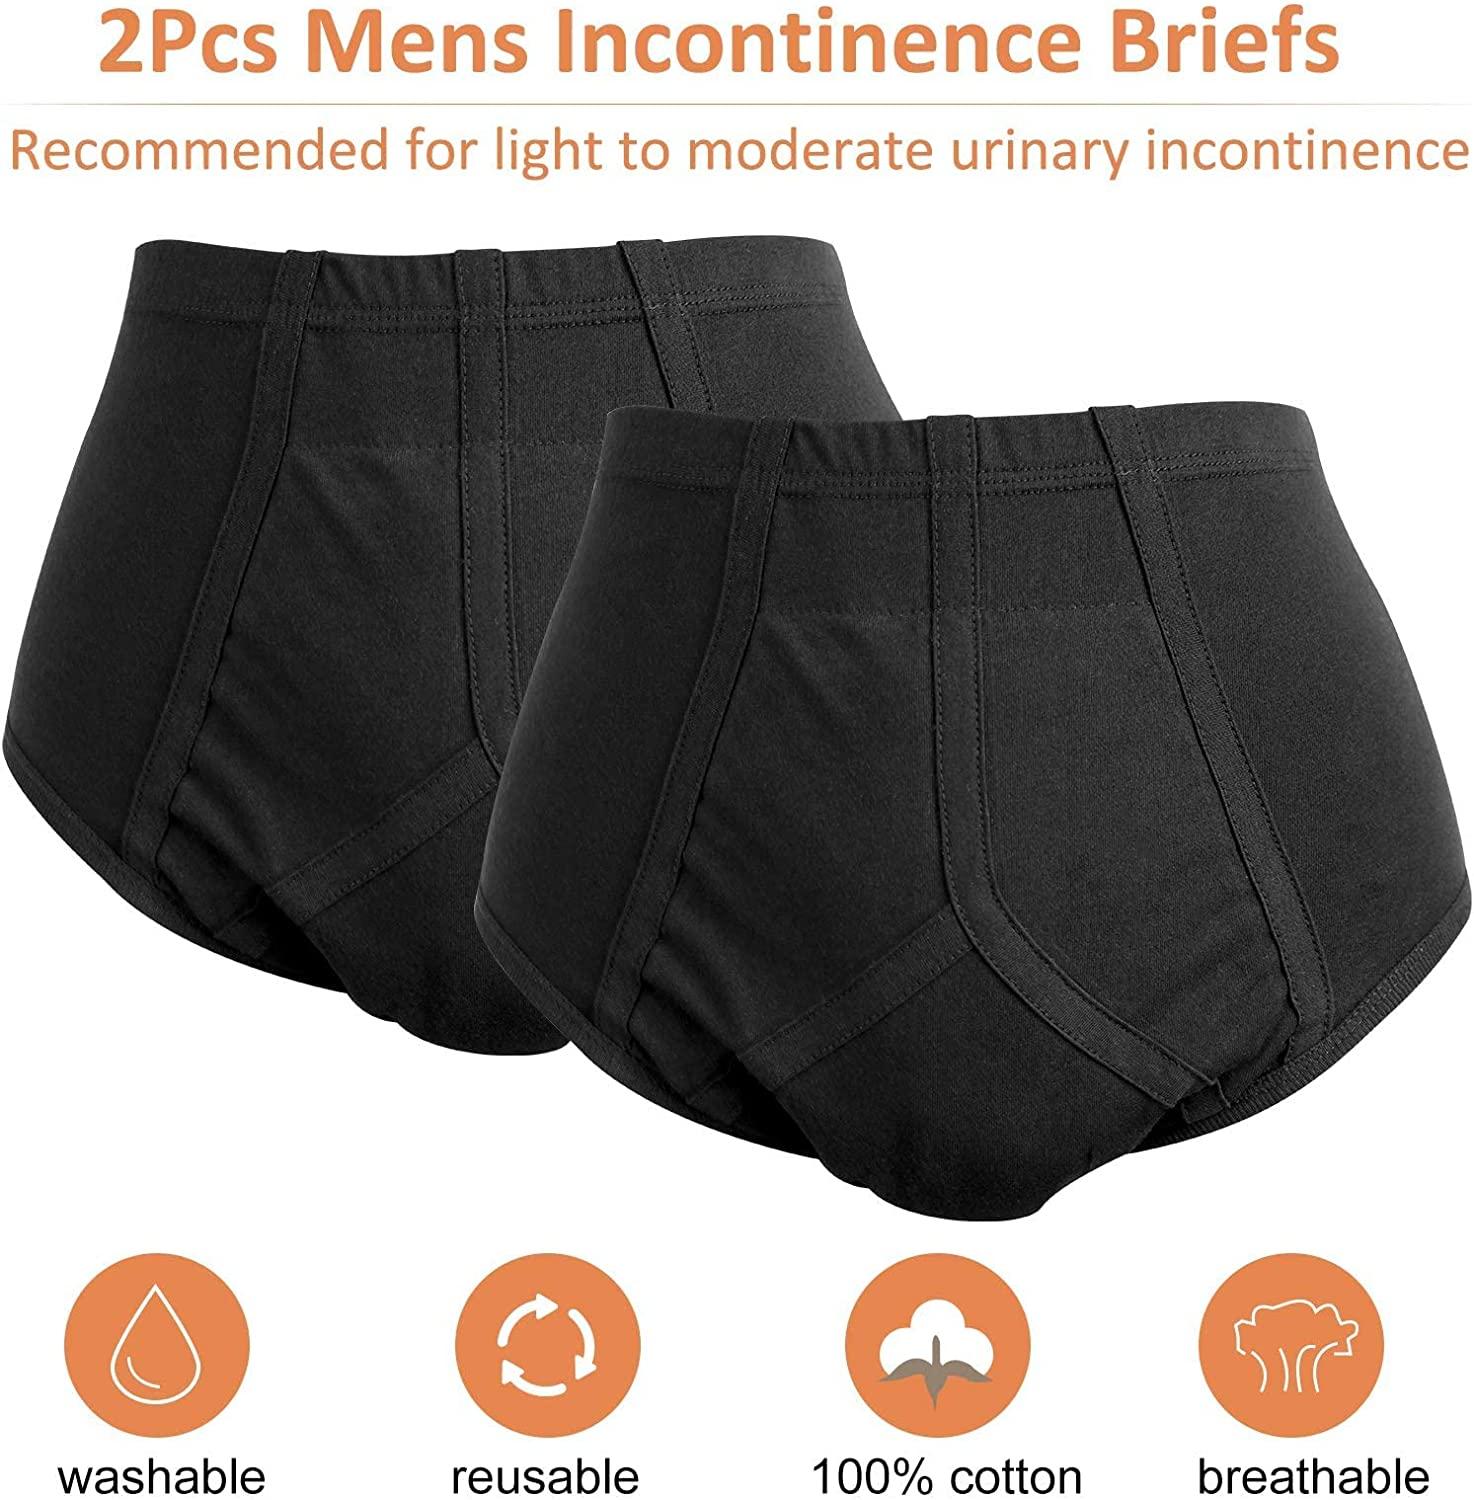 Underwear in Incontinence 